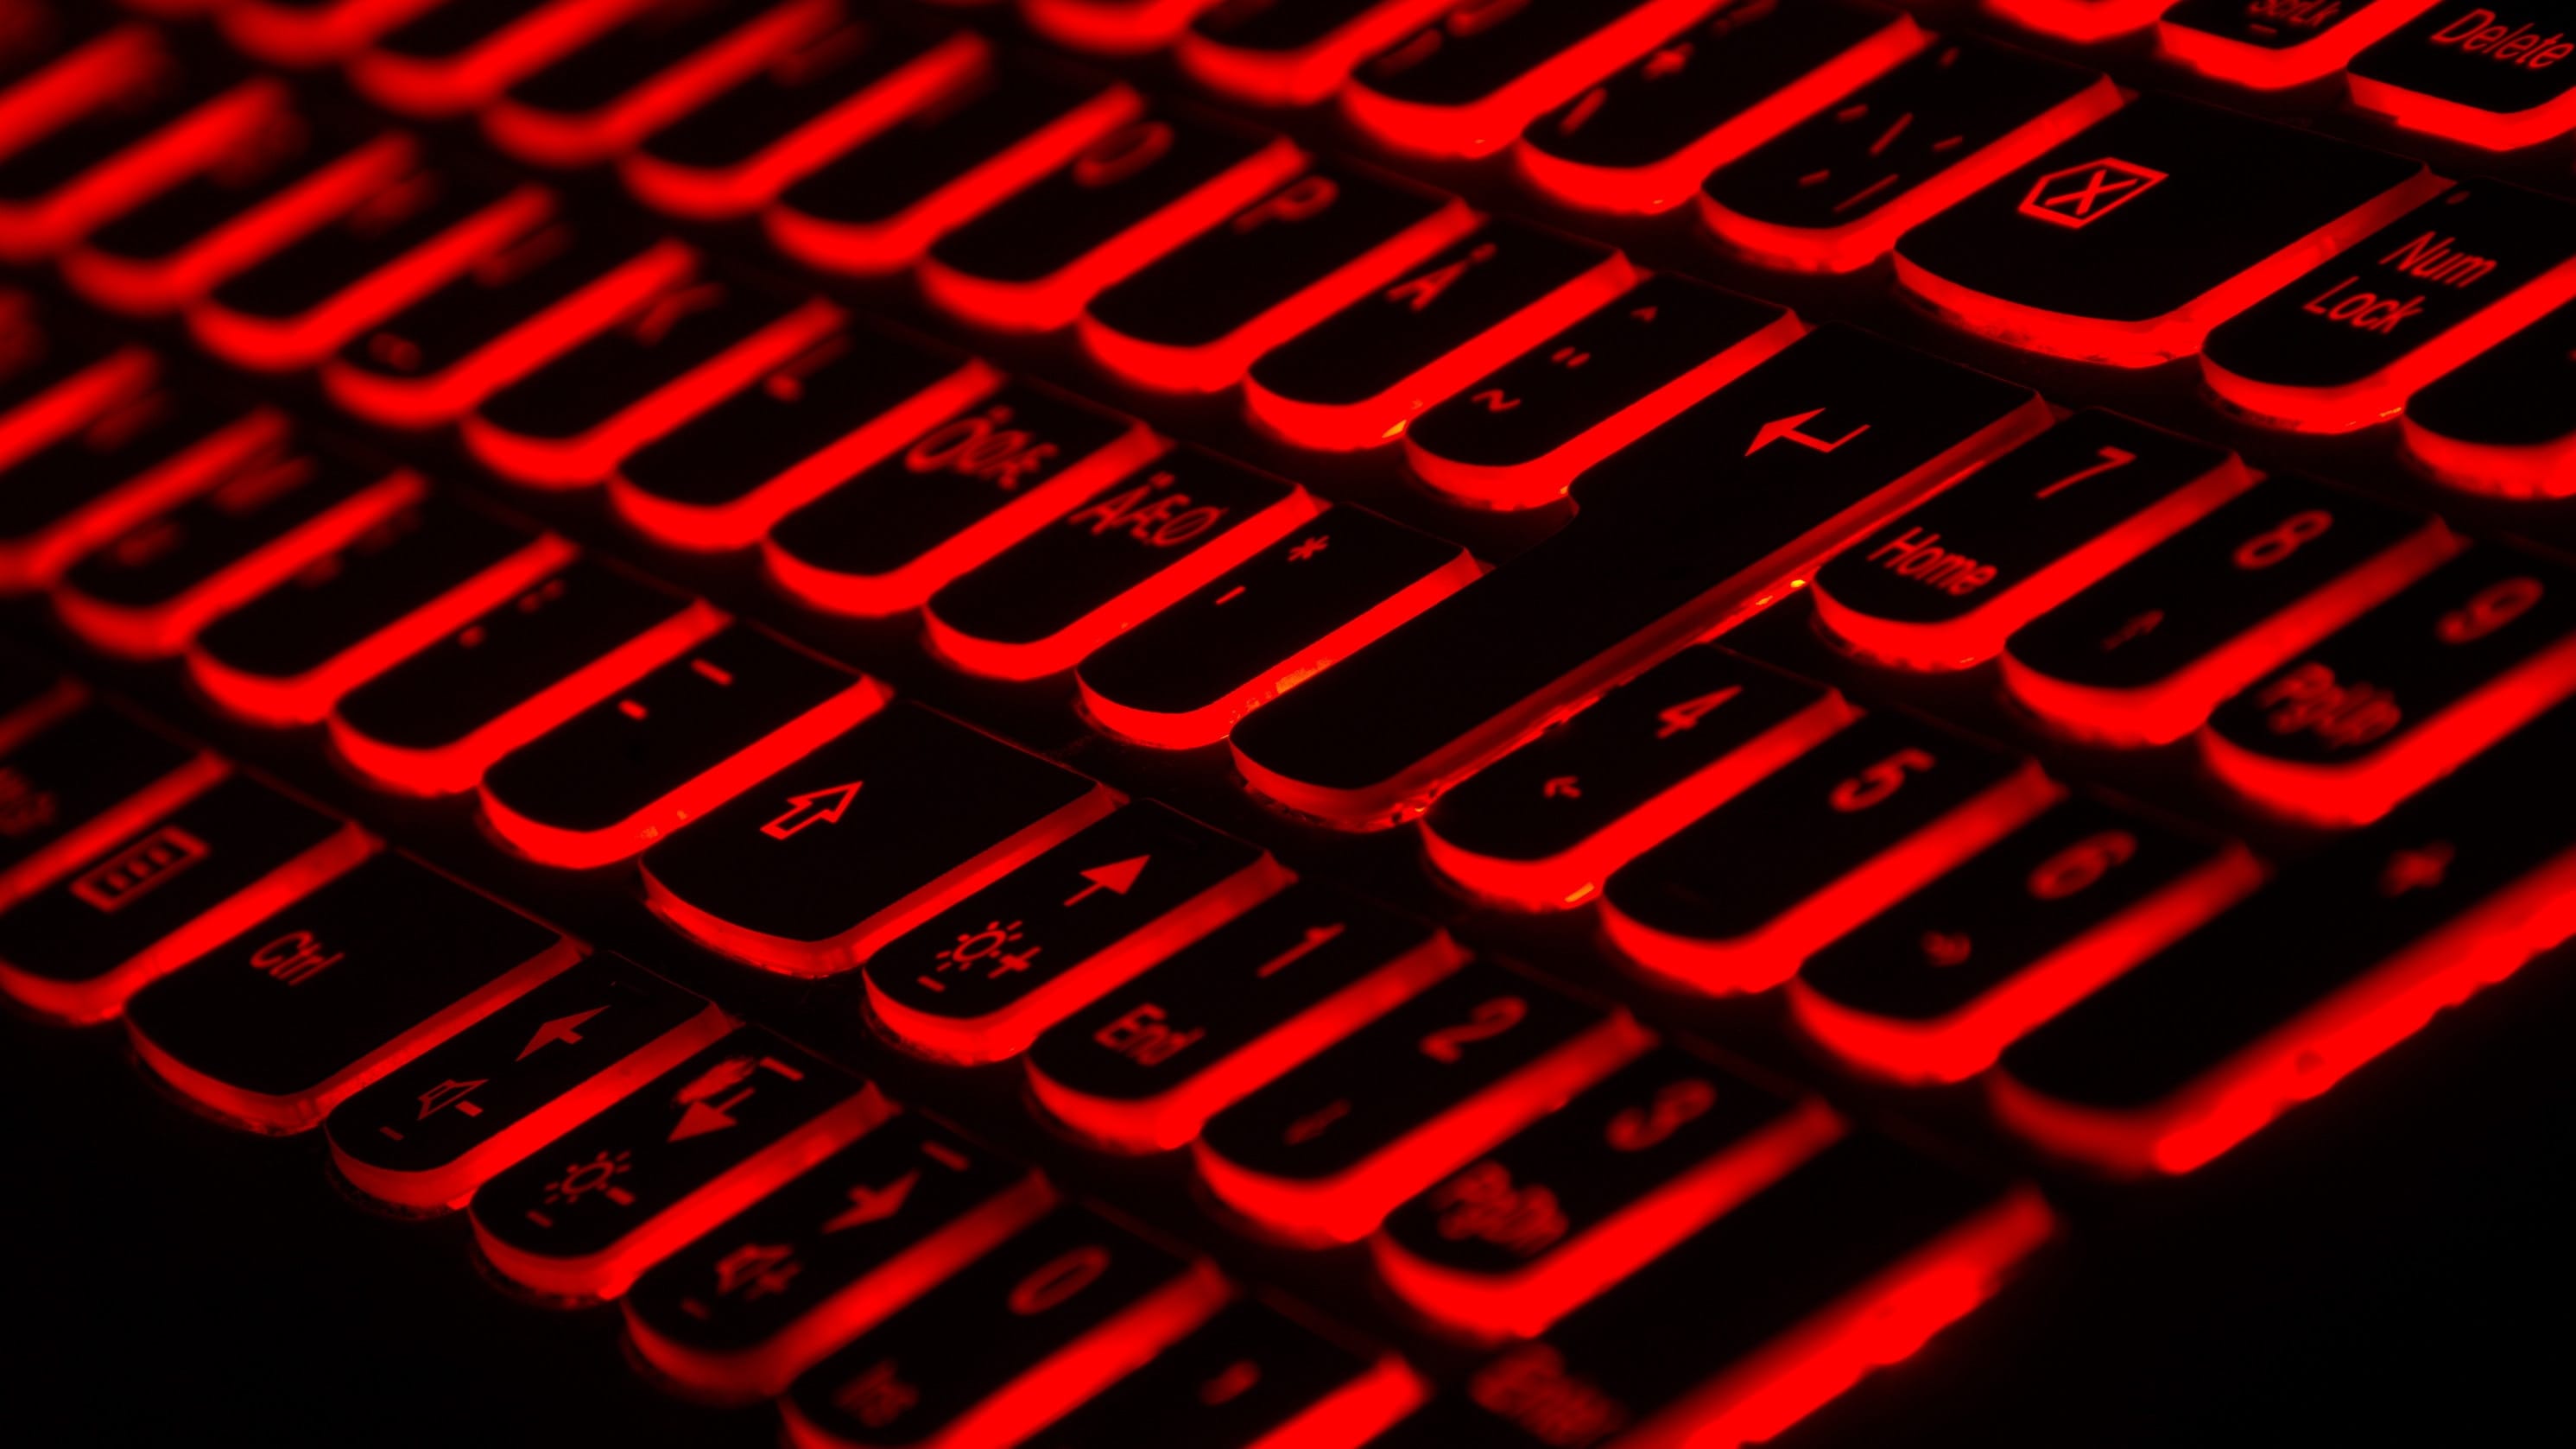 Computer keyboard with black keys backlit in red; image by Taskin Ashiq, via Unsplash.com.